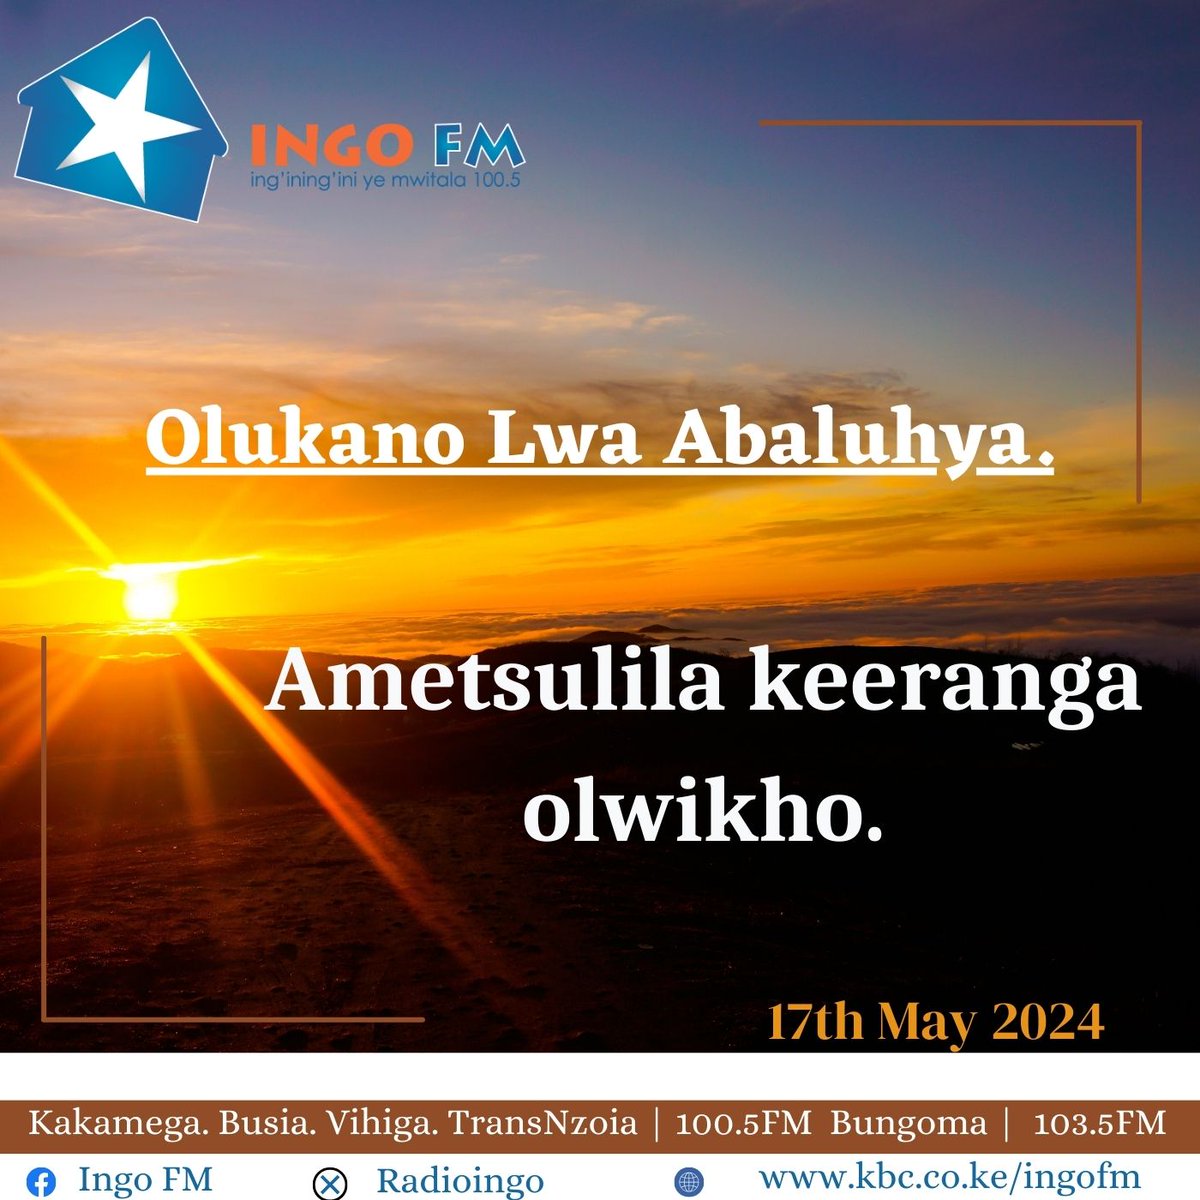 Olukano Lwa Abaluhya. Ametsulila keeranga olwikho. Former things revisited may kill relationships. ^DA #olukano #Mumabwibwi #IngoFM